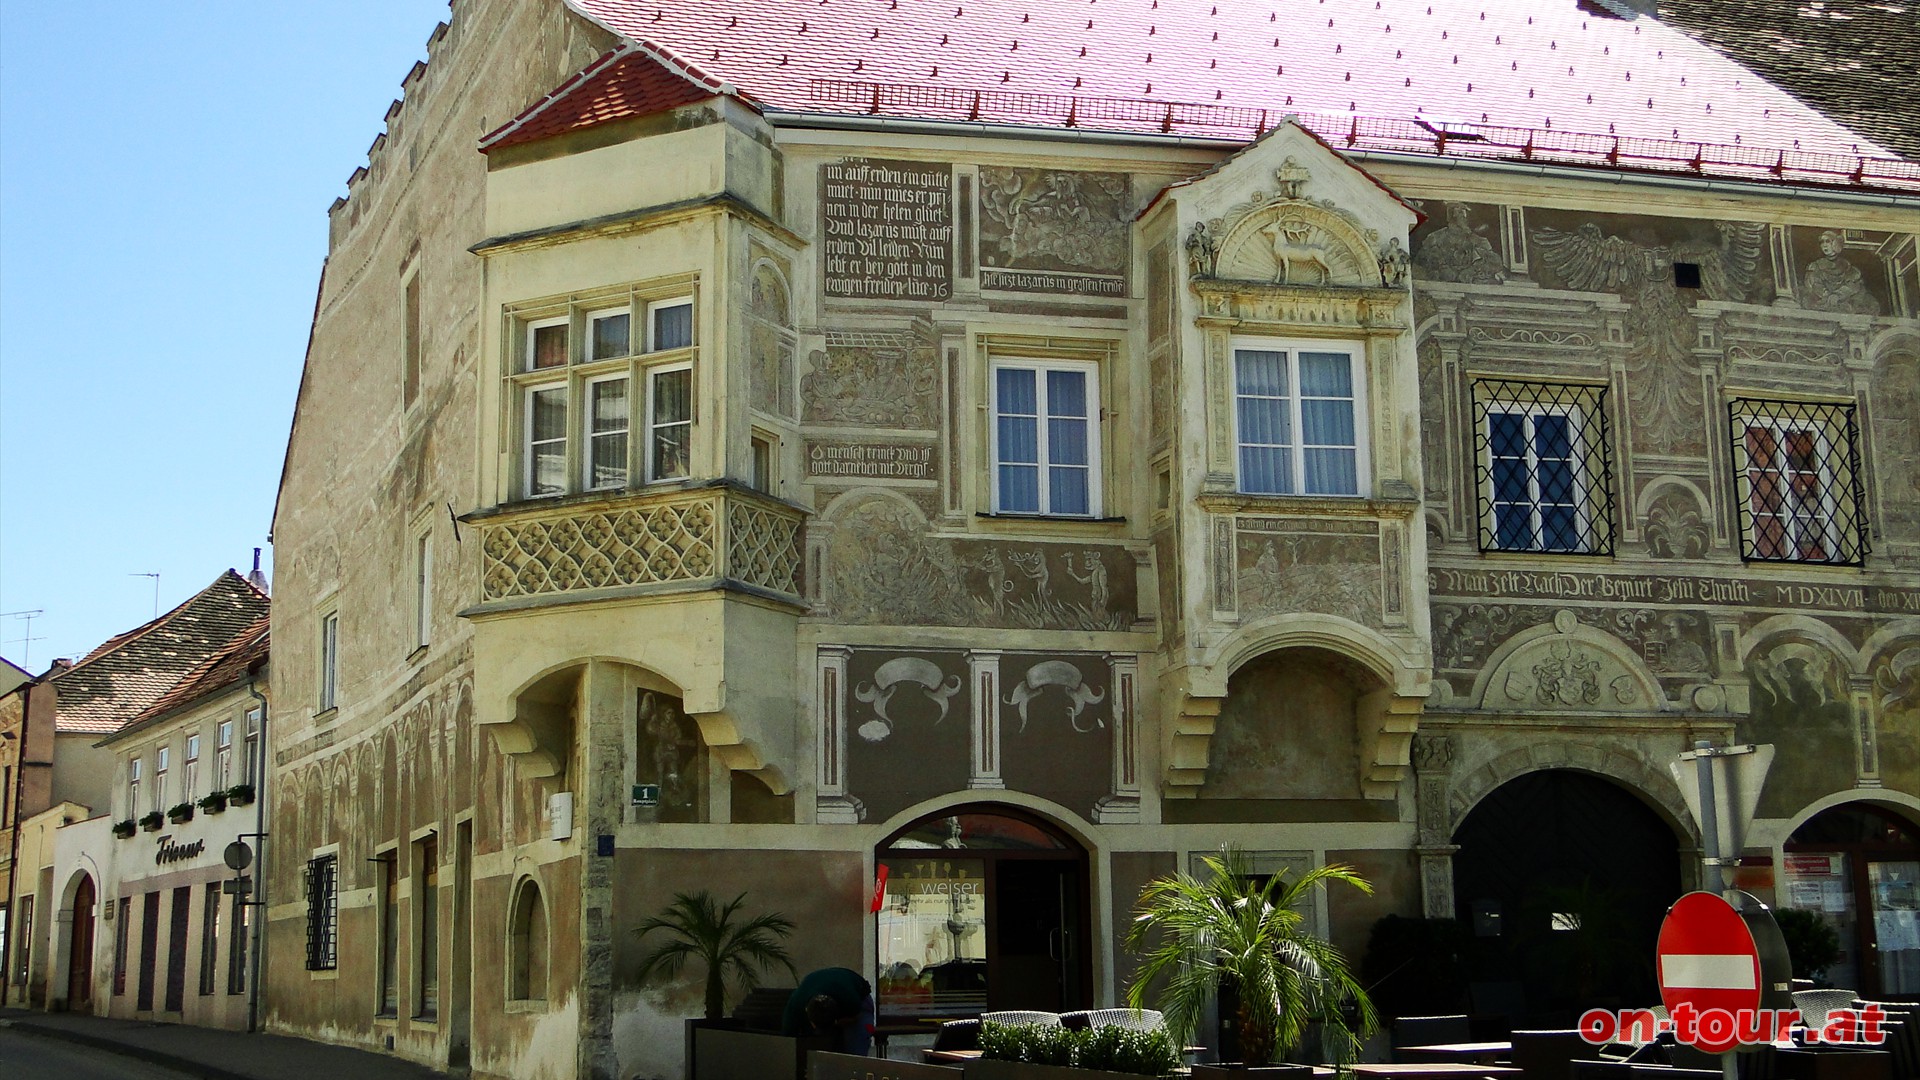 Am Hauptplatz befindet sich das -Gemalte Haus- mit seiner kunstvollen Renaissancefassade.